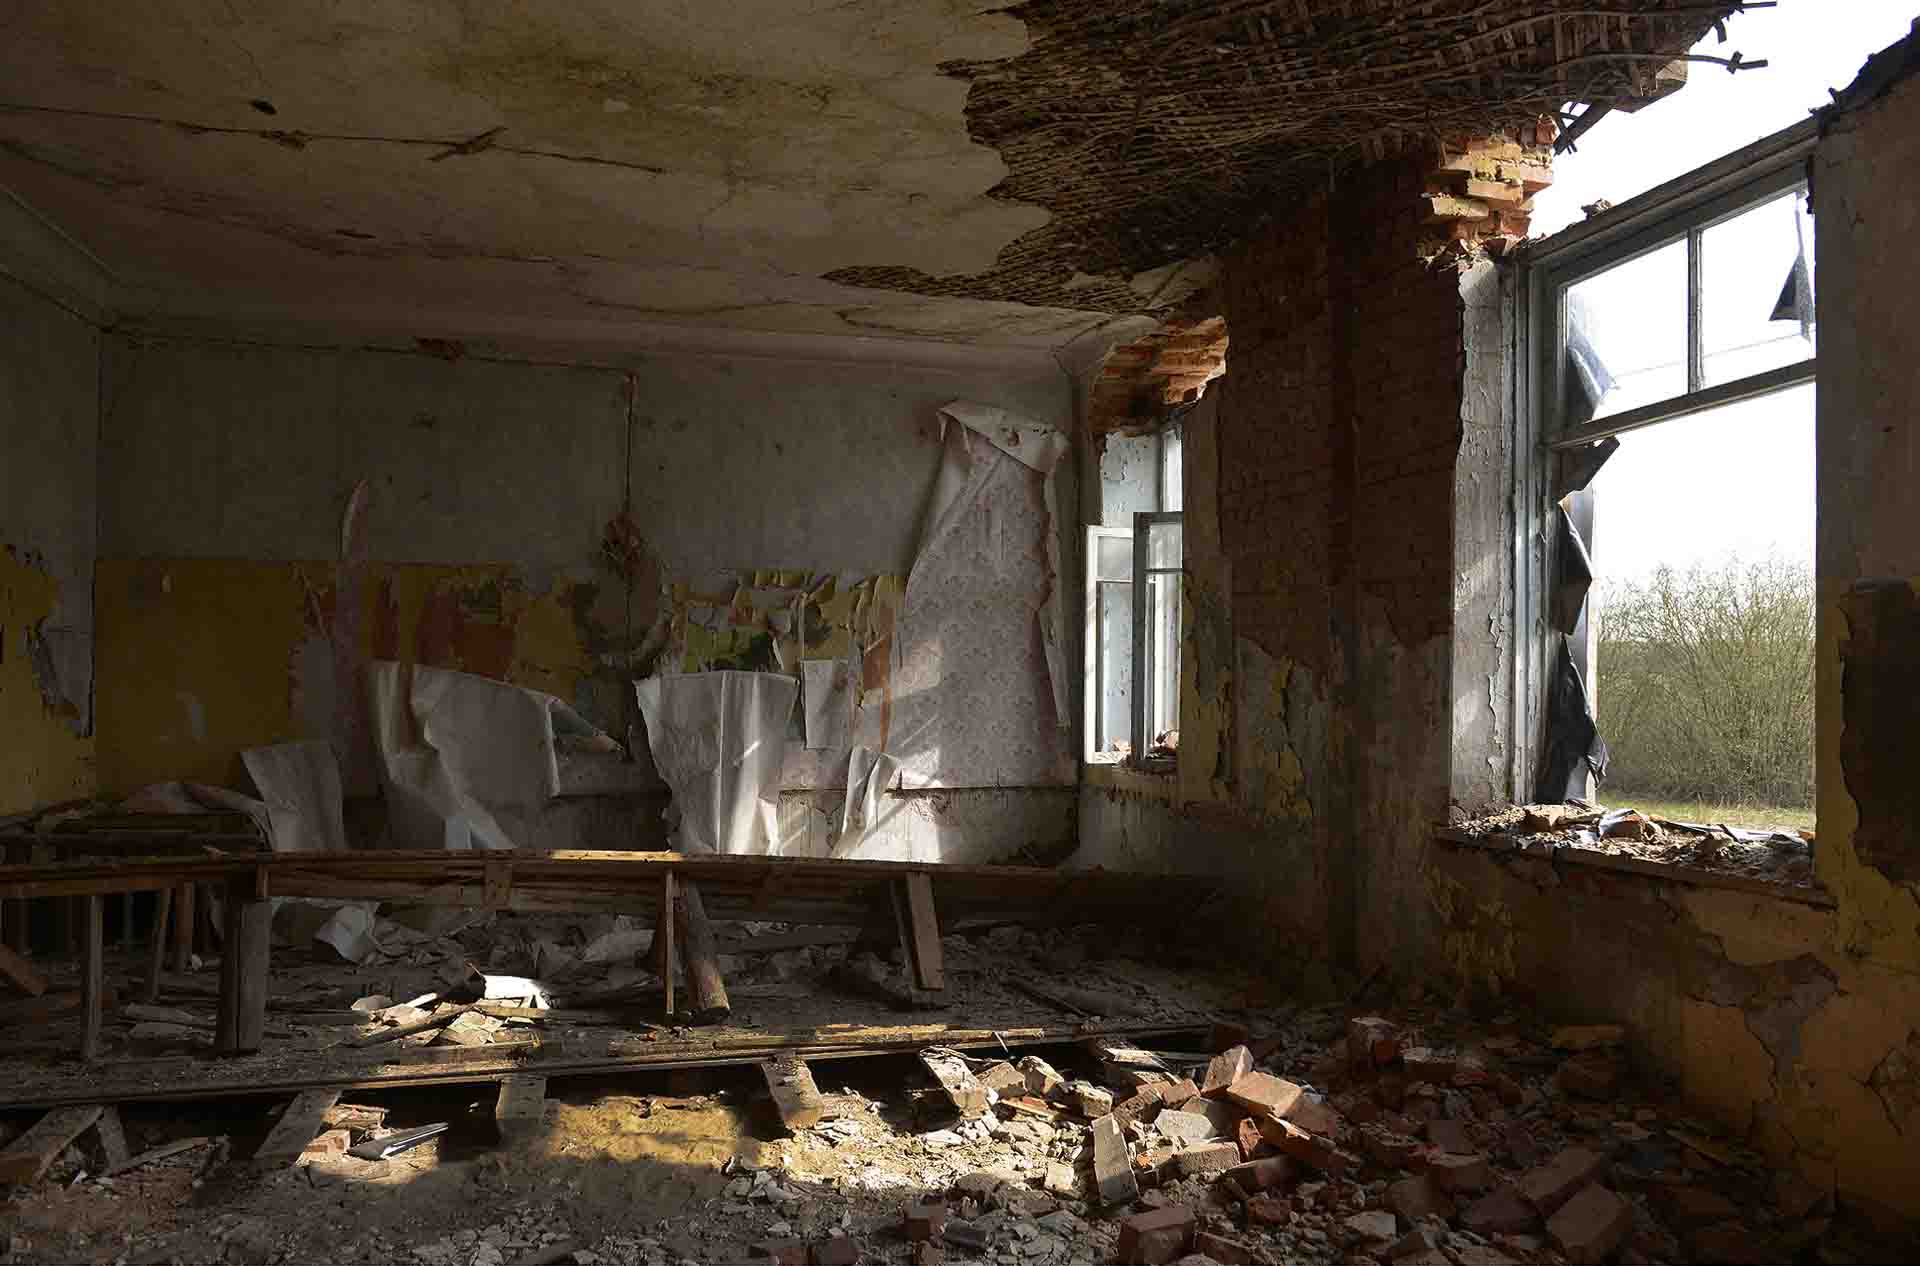 Un aula en la escuela abandonada cercana a Buda Koshelenko. Zona afectada por la radiación del accidente de Chernobil.Esta escuela fue abandonada años después / Foto: Alfons Rodríguez